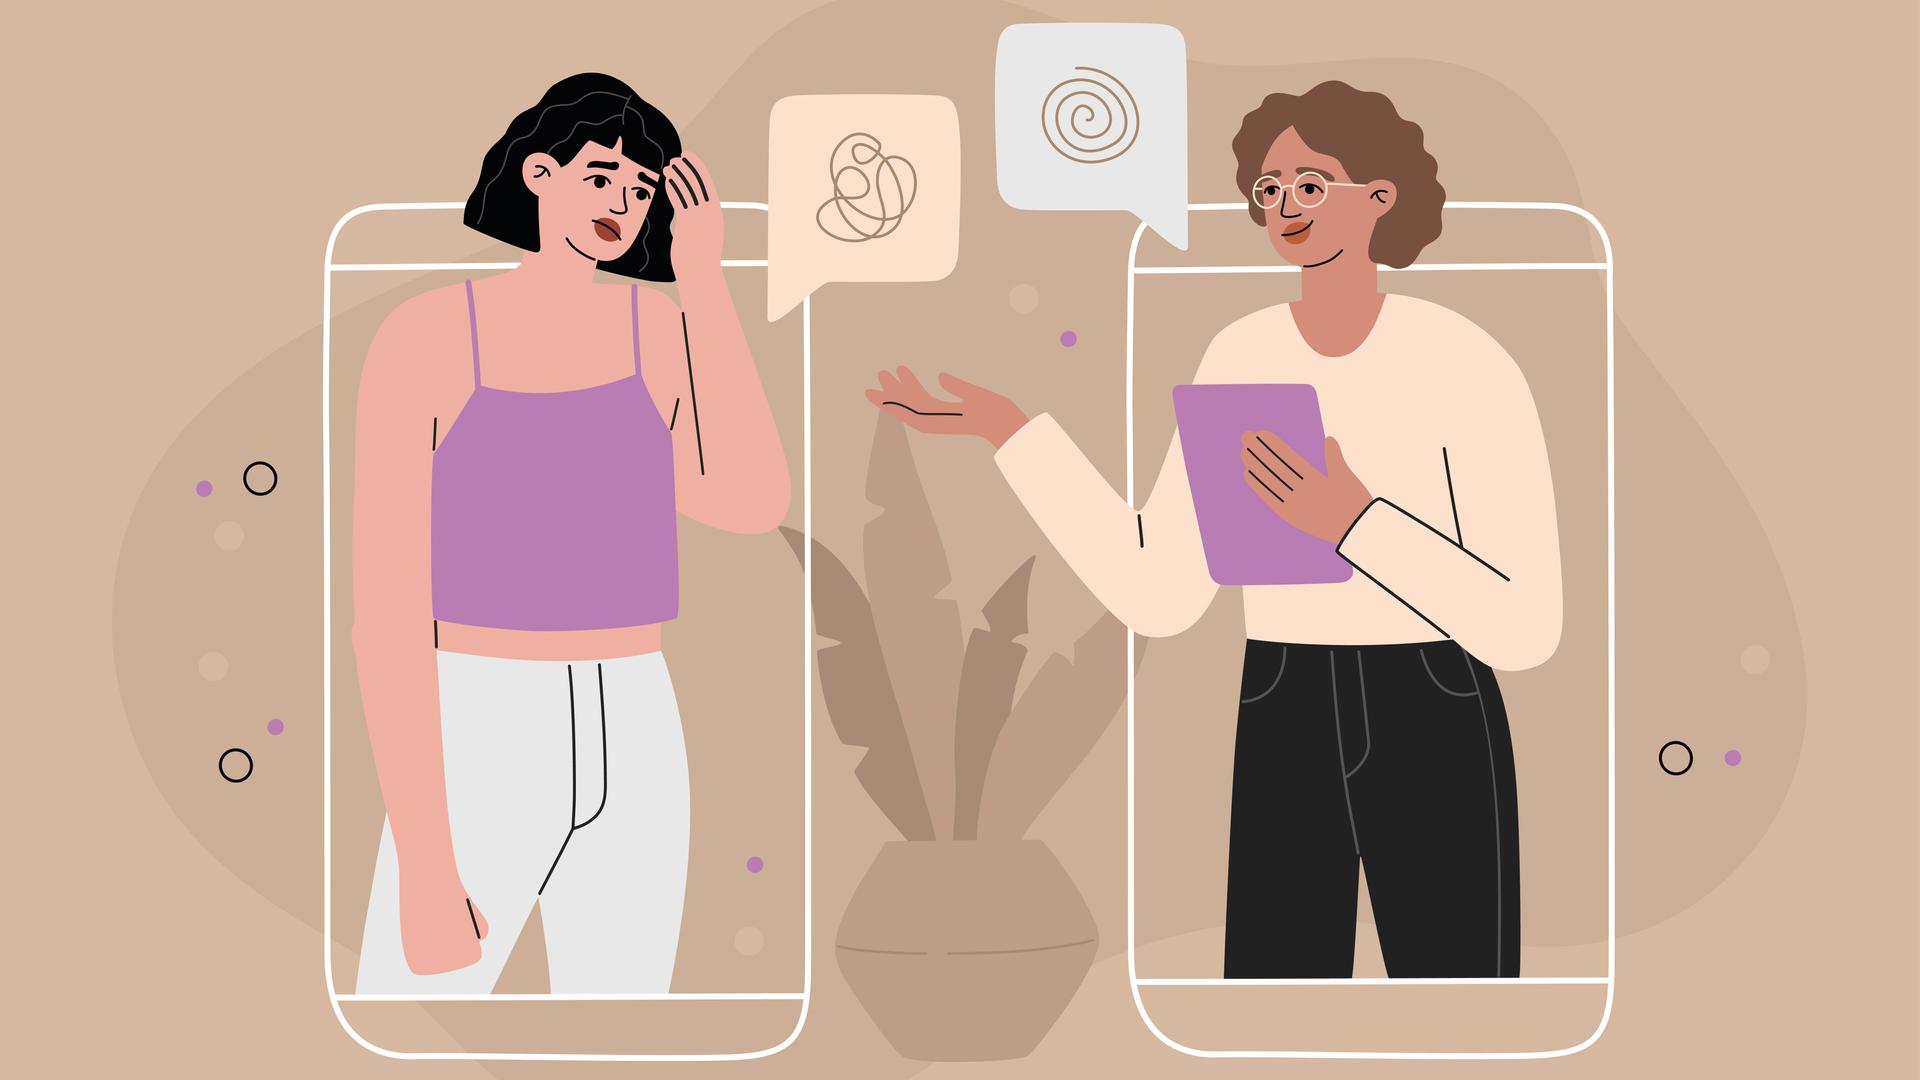 Illustration einer Frau, die bei einer Therapeutin Rat sucht. Beide sind jeweils vom Umriss eines Smartphones umgeben.